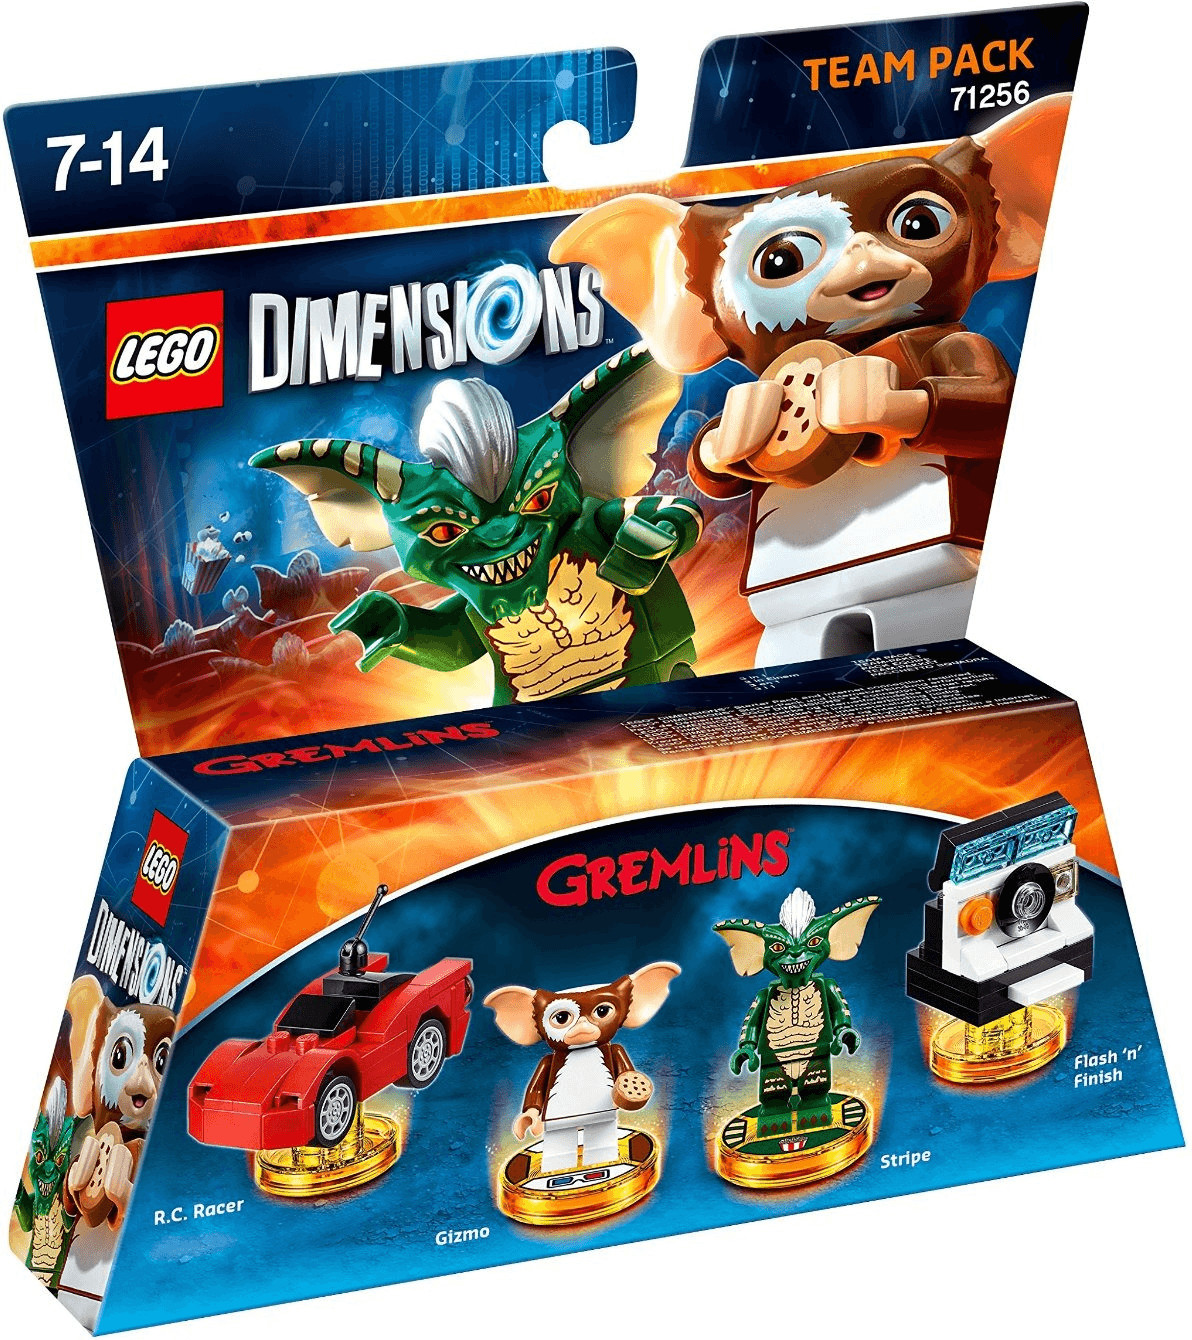 LEGO Dimensions: Team Pack - Gremlins